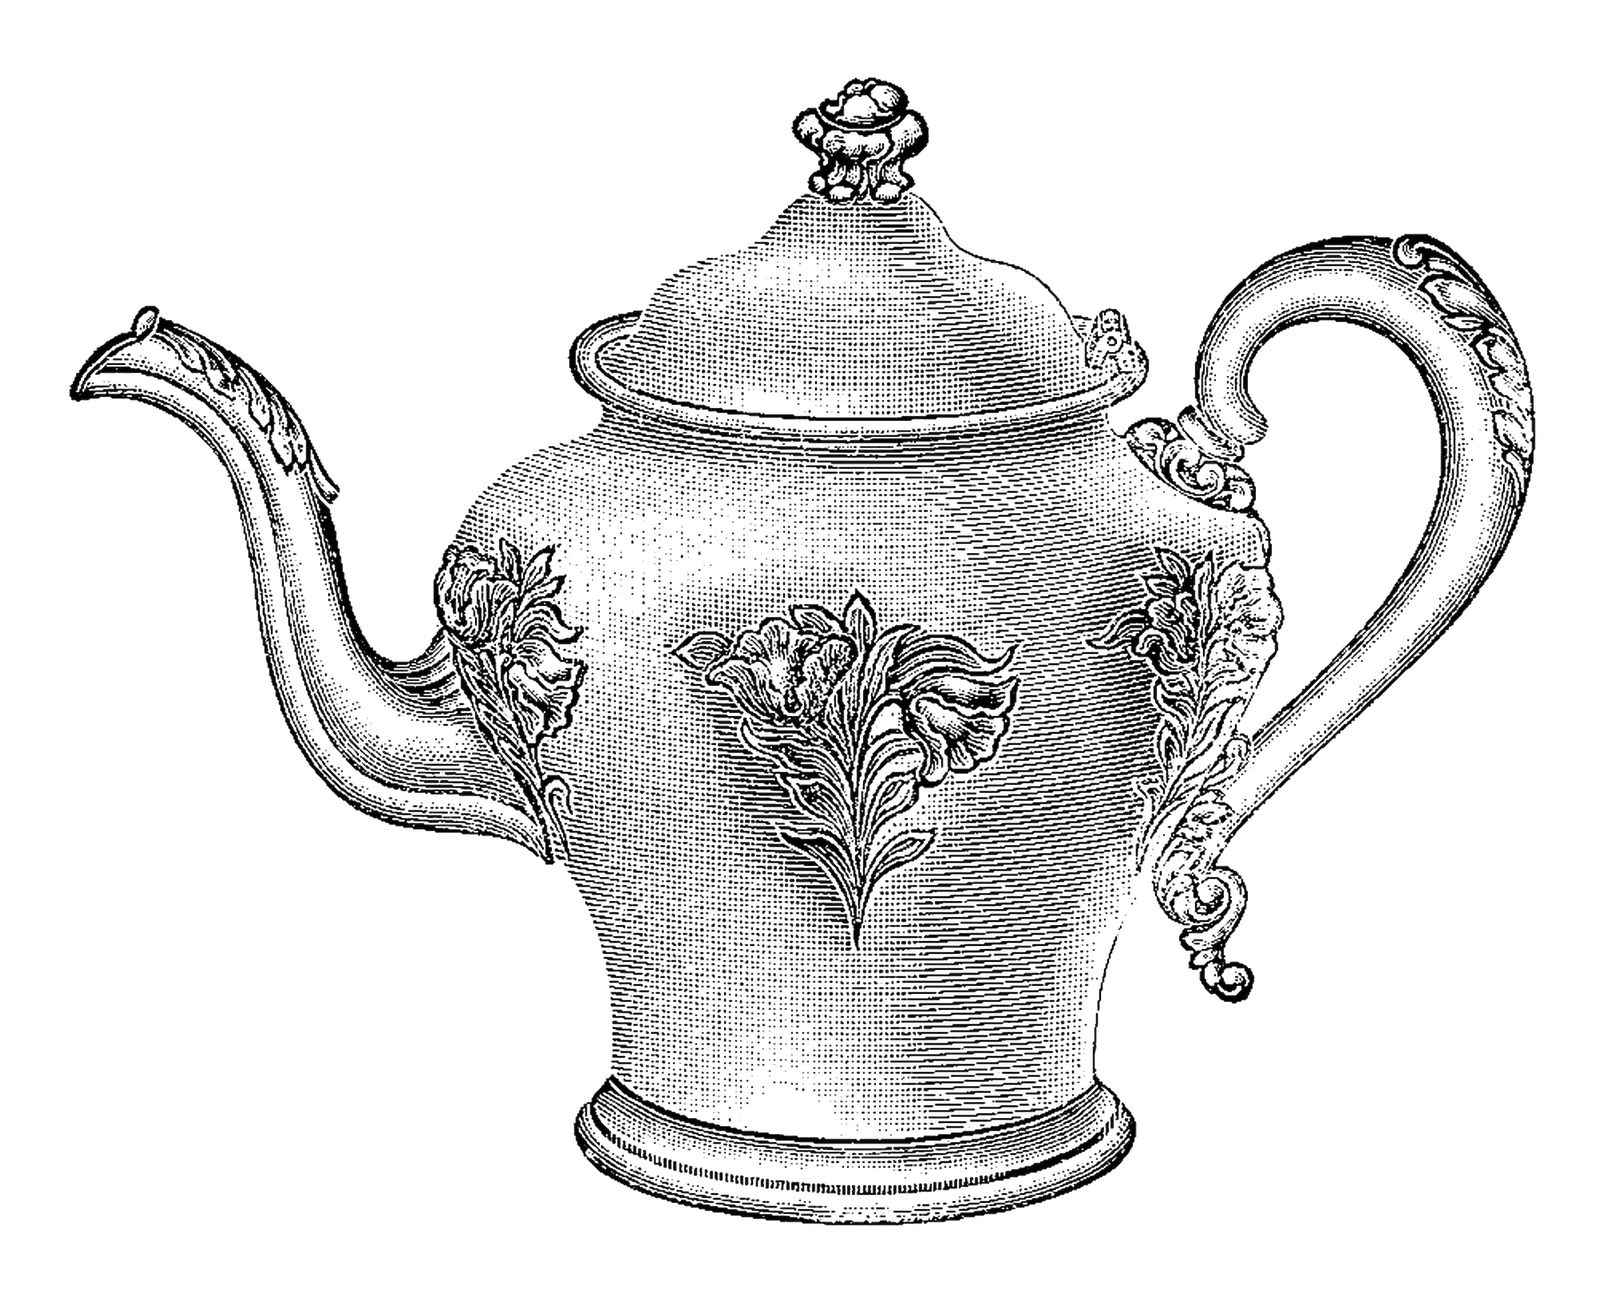 Digital Stamp Design: Free Teapot Digital Stamp: Vintage Teapot Illustration with Floral Pattern 